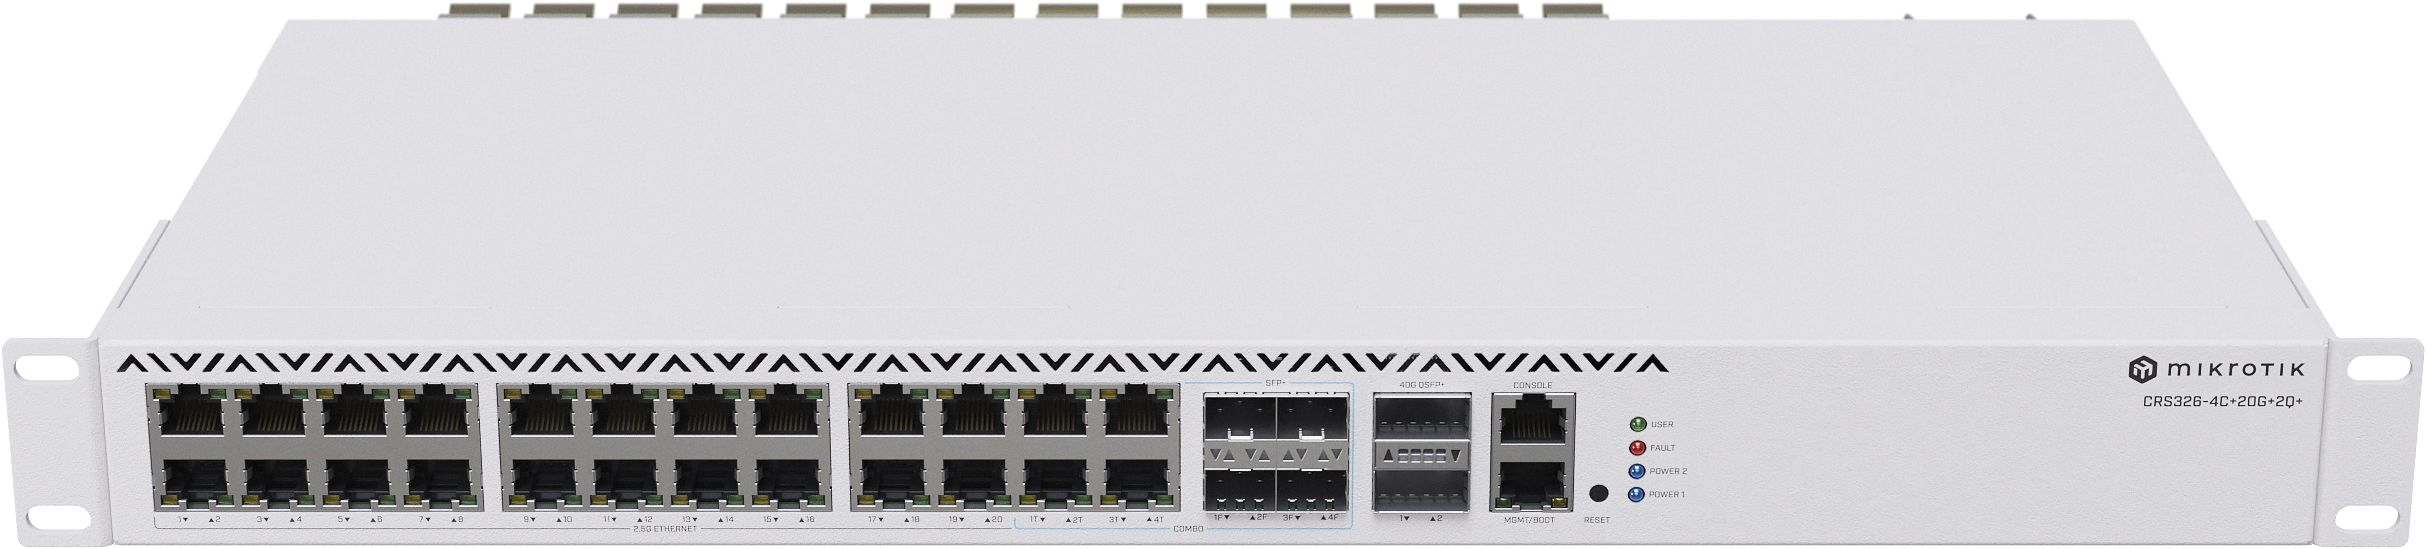 Коммутатор MikroTik Cloud Router Switch CRS326-4C+20G+2Q+RM (CRS326-4C+20G+2Q+RM) фото 2